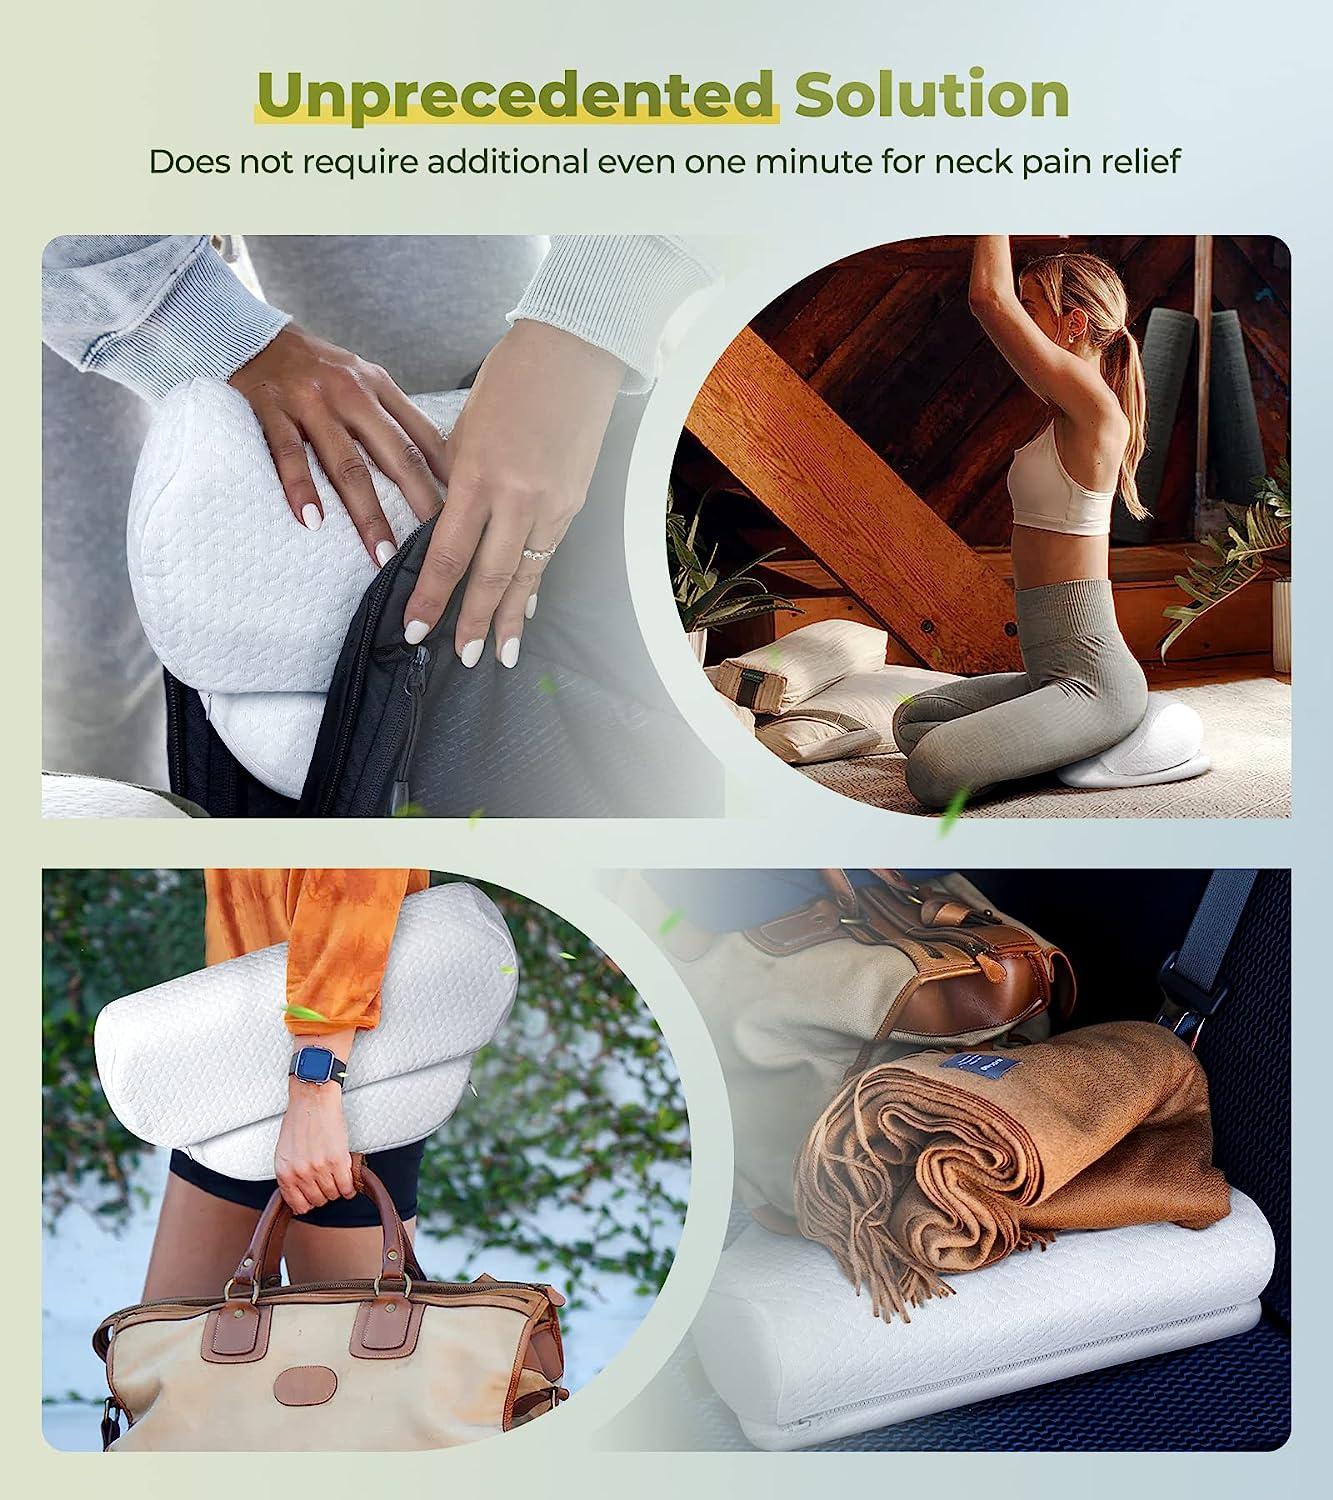 Orthopedic Memory Foam Lumbar Pillow For Lower Back Pain Relief